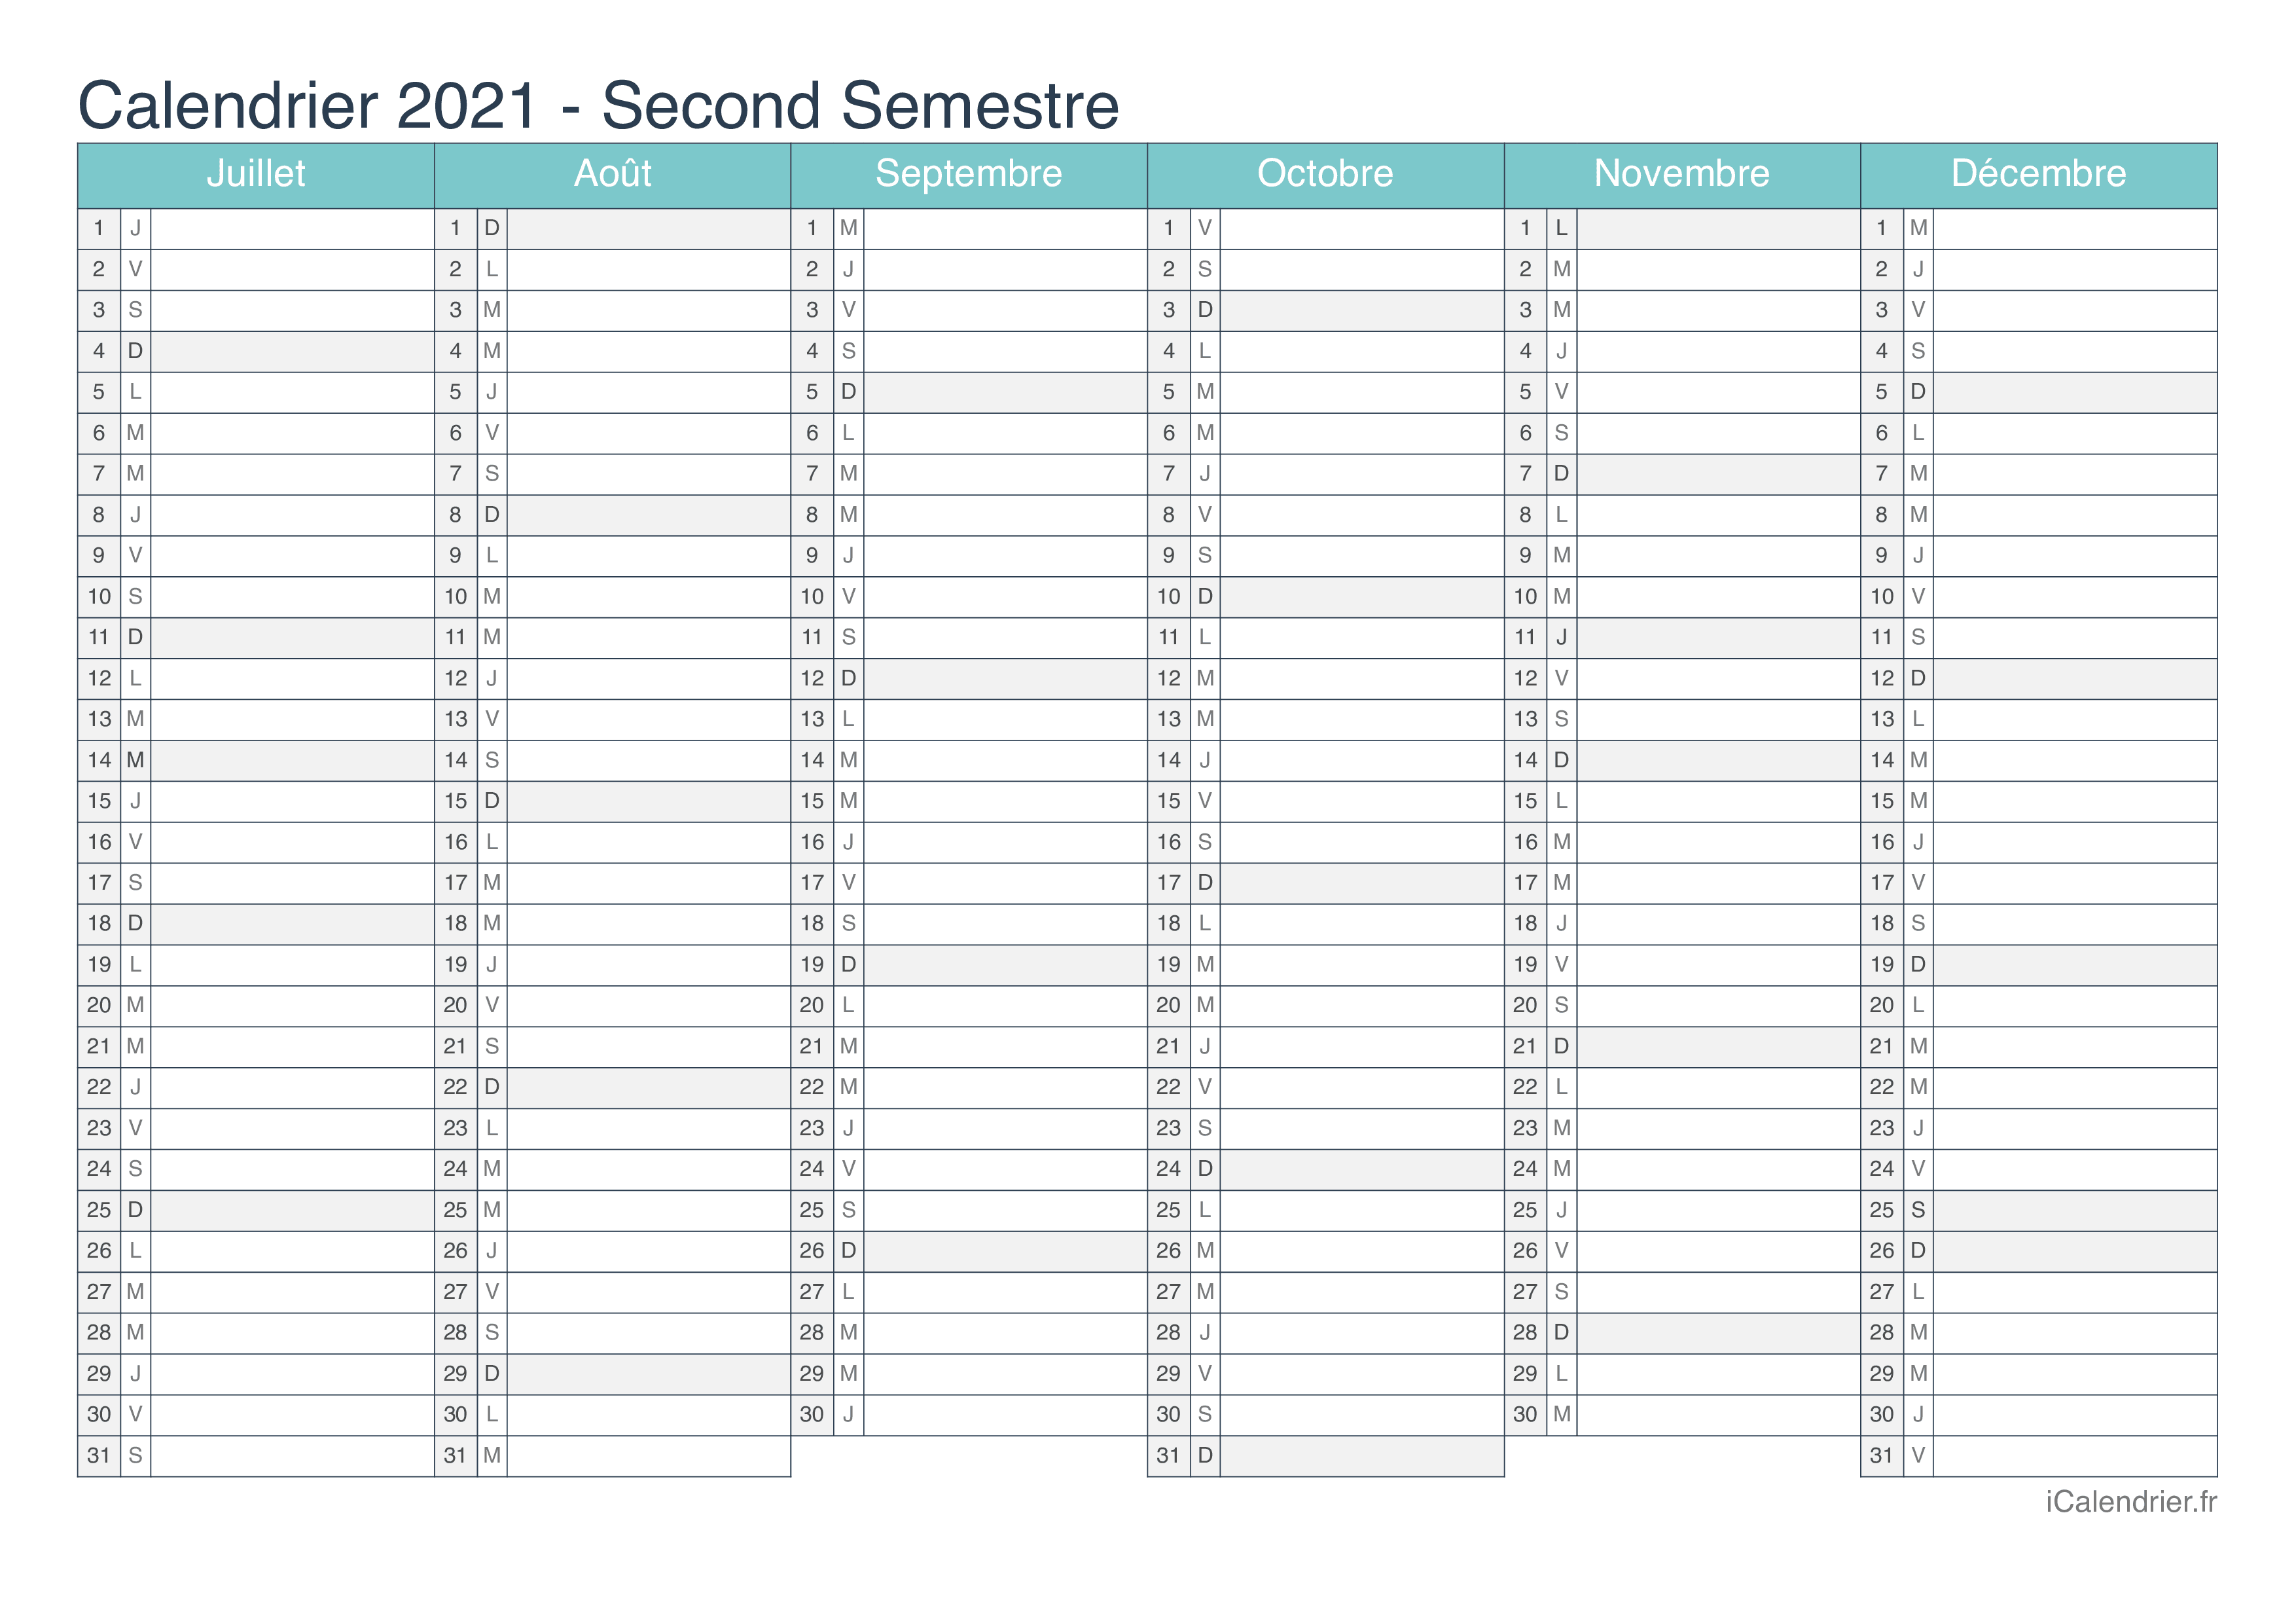 Calendrier Scolaire 2021 2022 Vierge Calendrier 2021 à imprimer PDF et Excel   iCalendrier